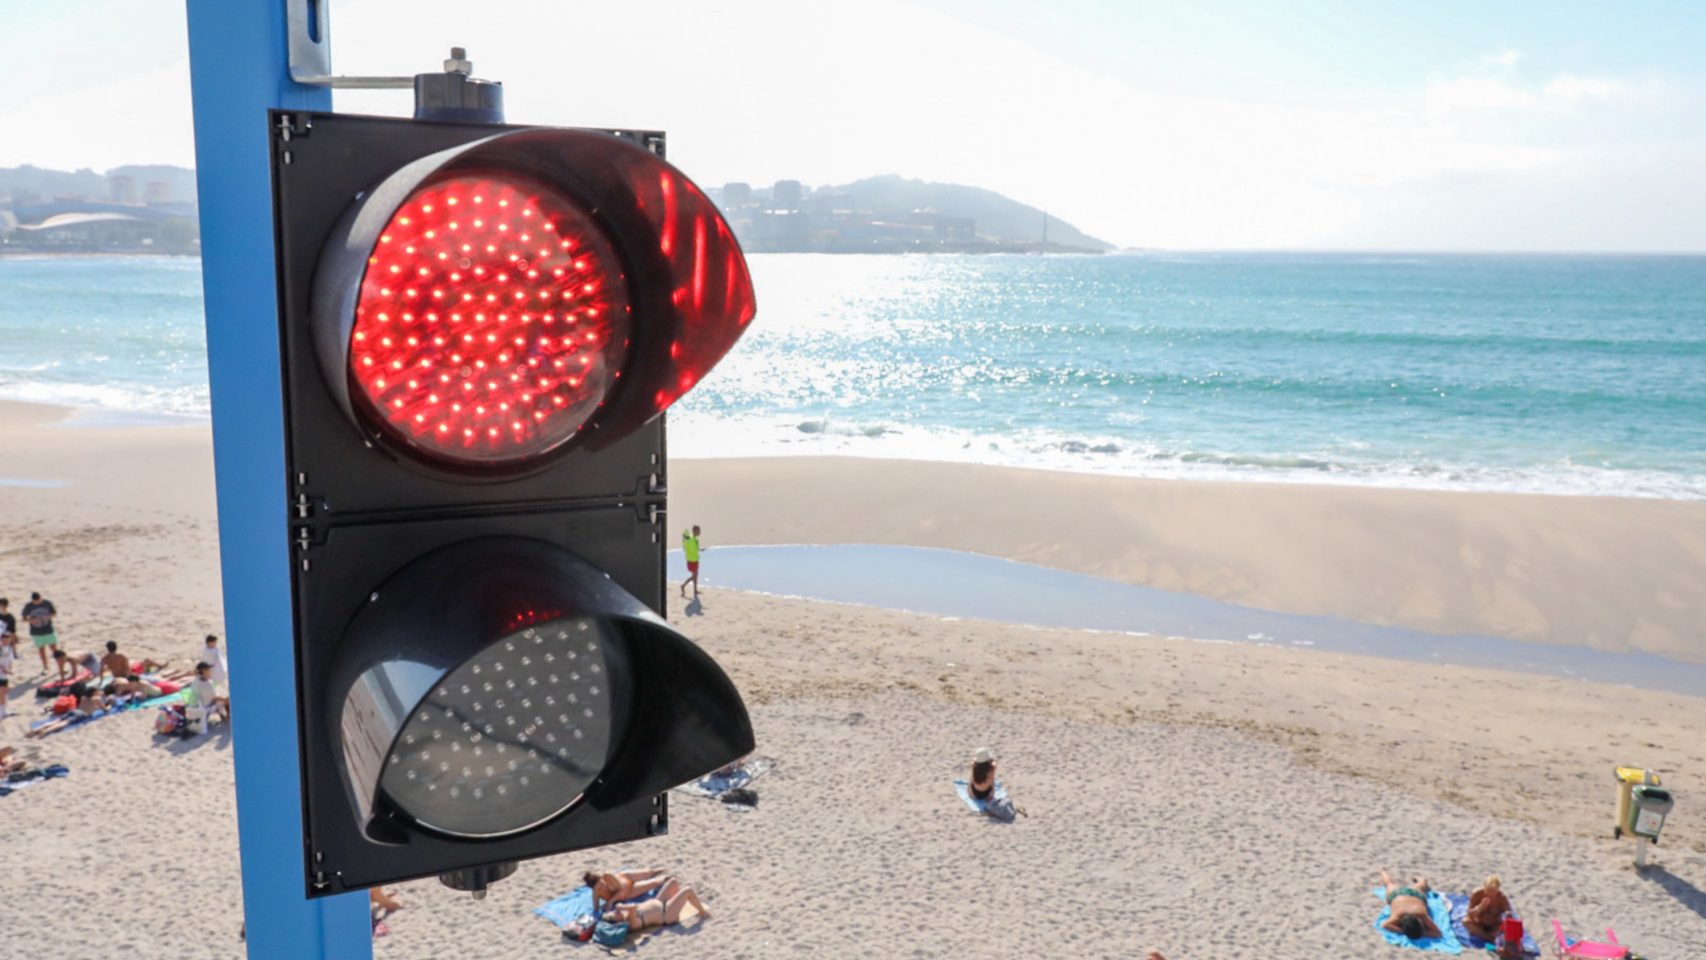 El semáforo en rojo indica que el aforo de la playa está completo 